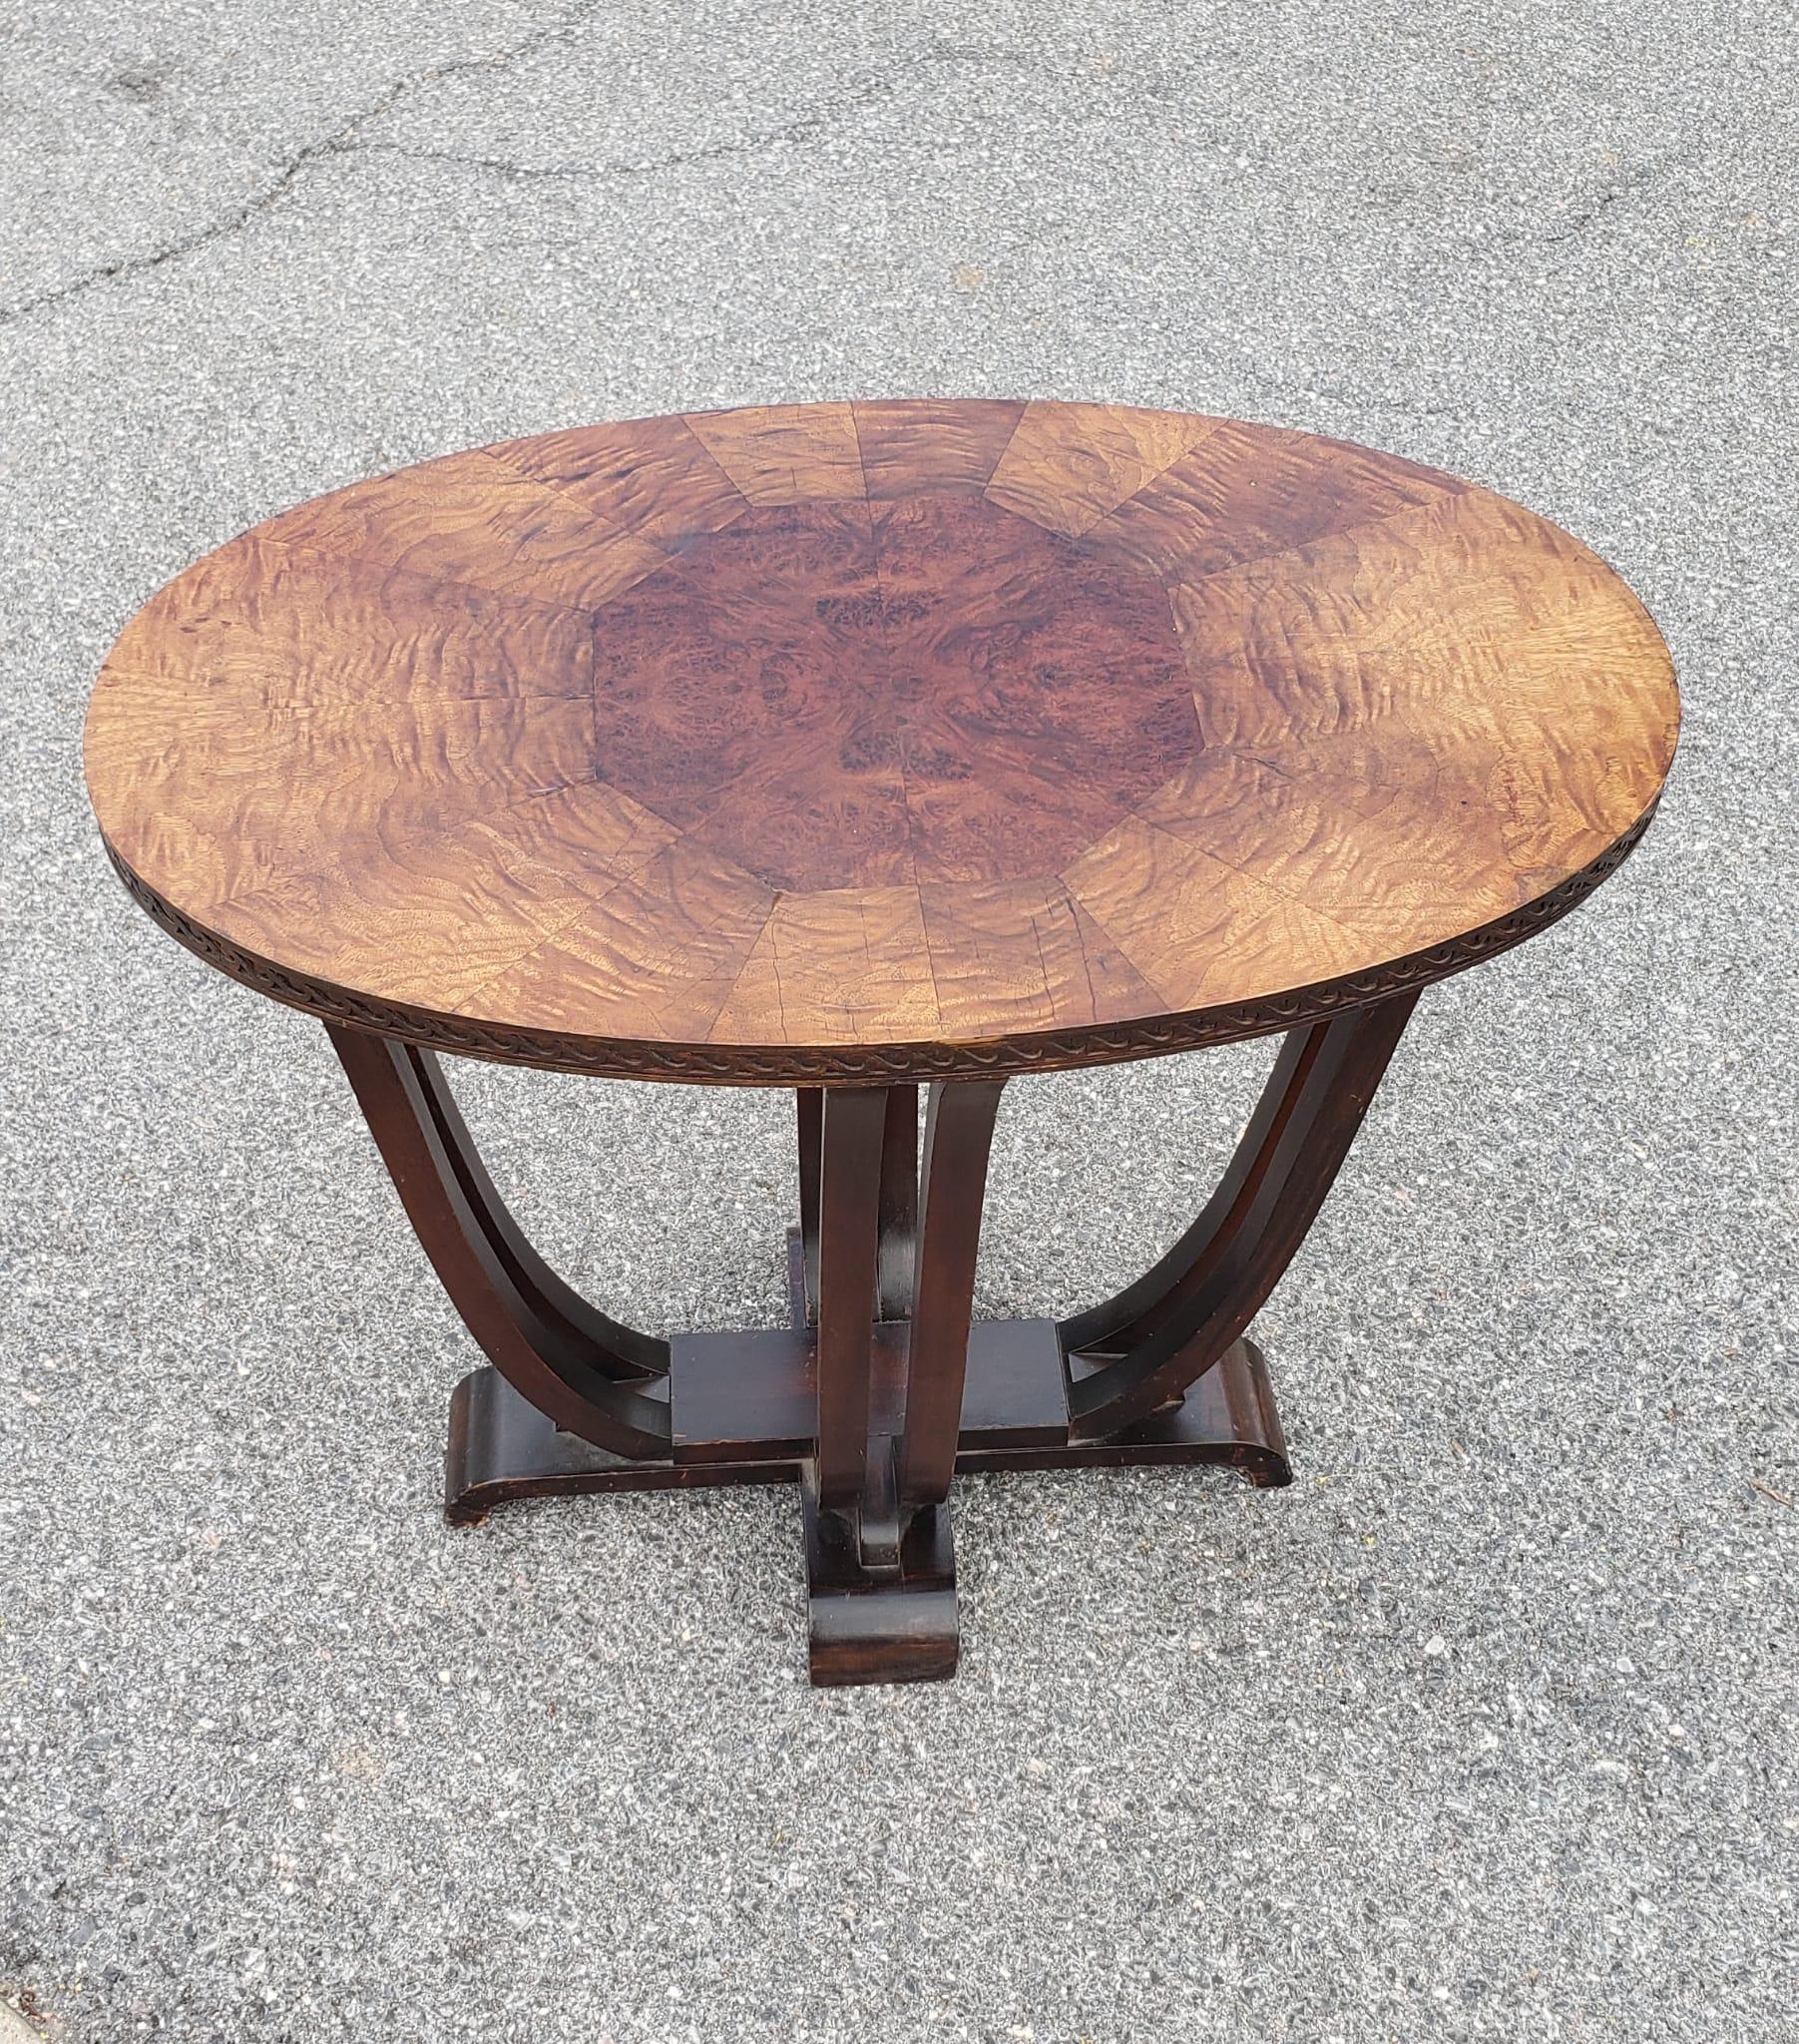 Ovaler Mitteltisch oder Beistelltisch aus Nussbaum-Maser des frühen 20. Der Tisch wurde im Laufe der Zeit aufgefrischt.
Misst 32